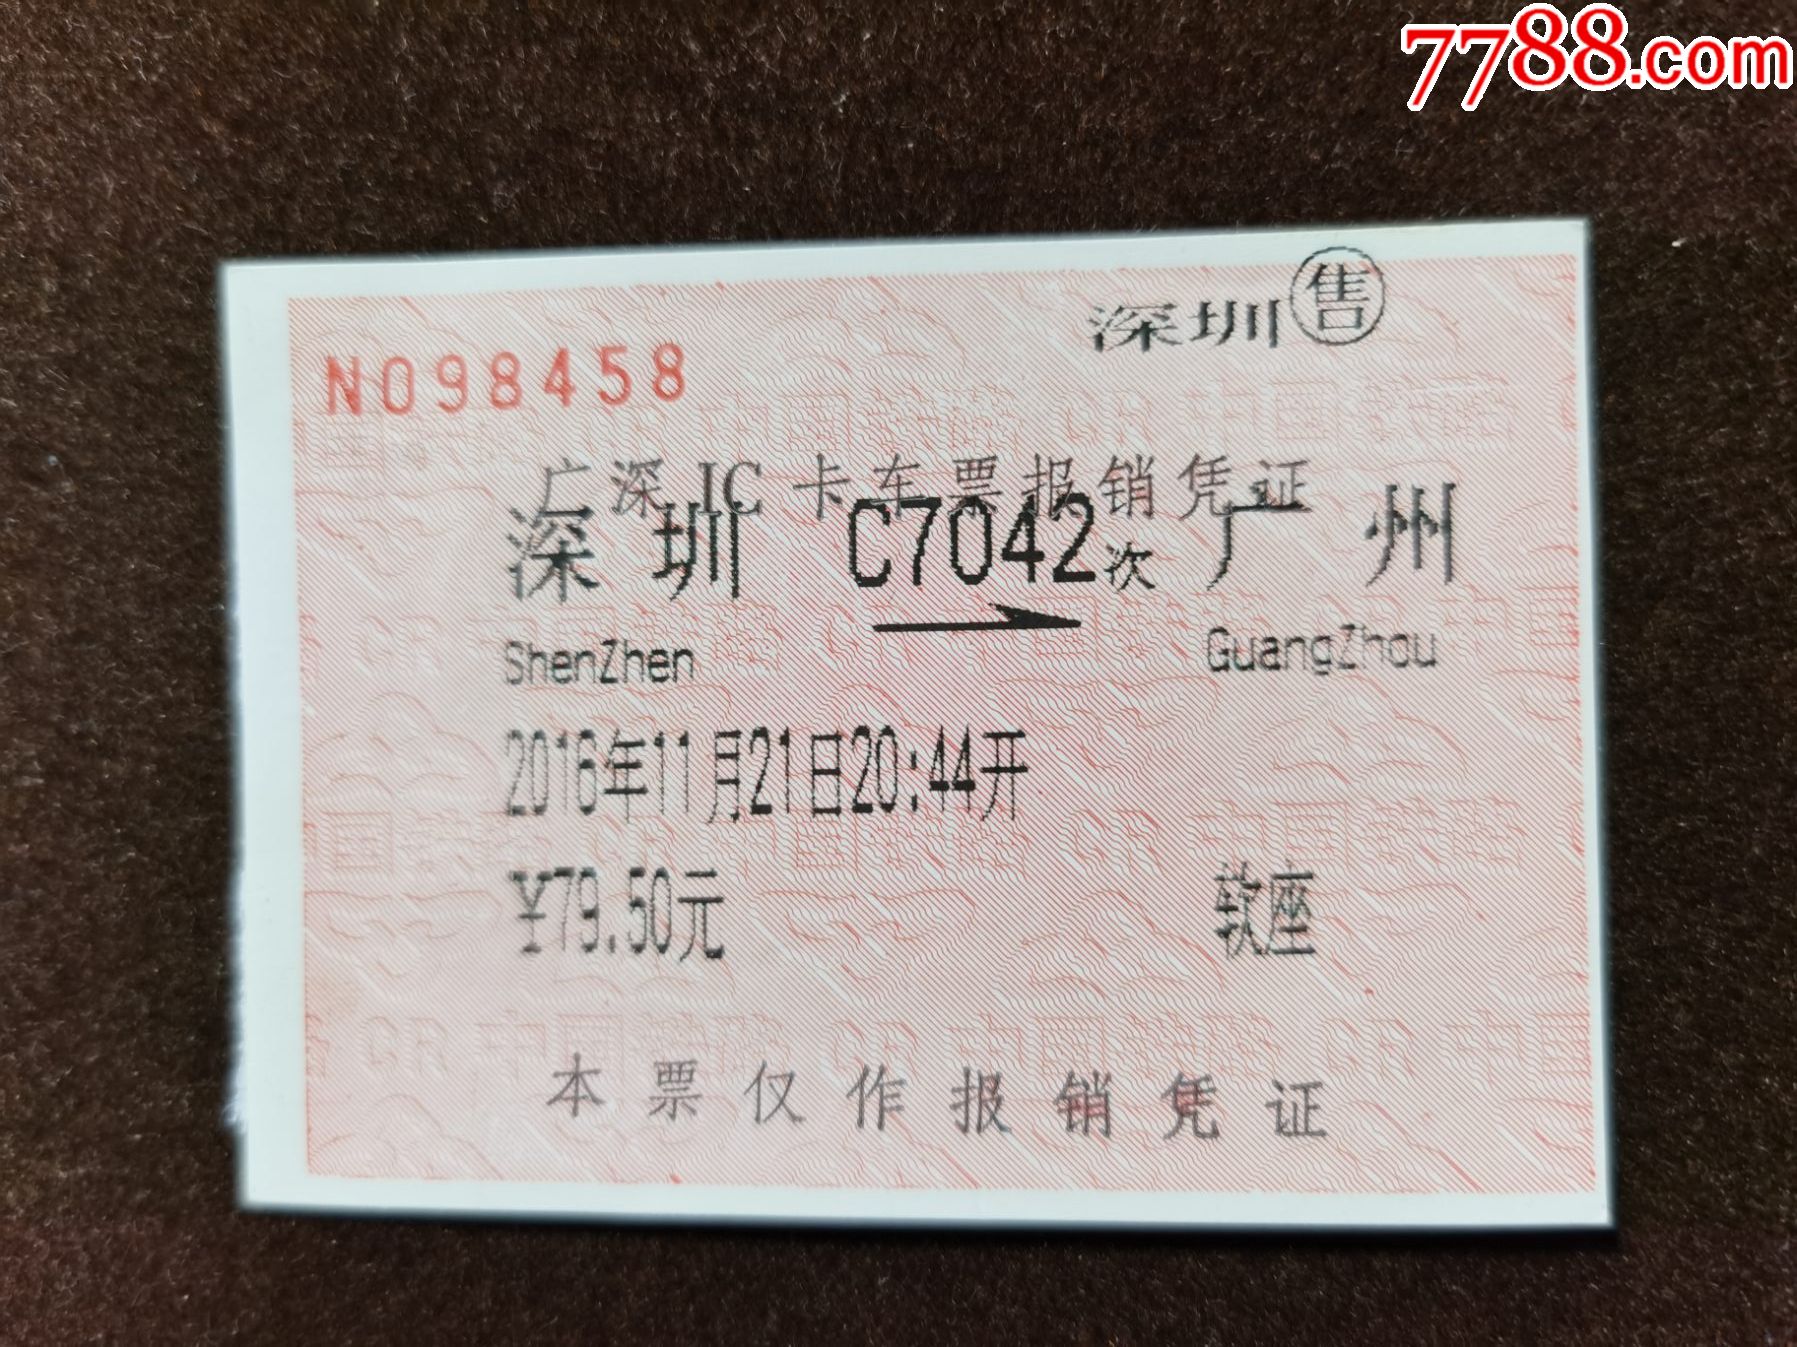 买高铁票深圳到广州南，不下车，我要坐到长沙去，可以补票吗-深圳到长沙高铁，可以上车补票嘛